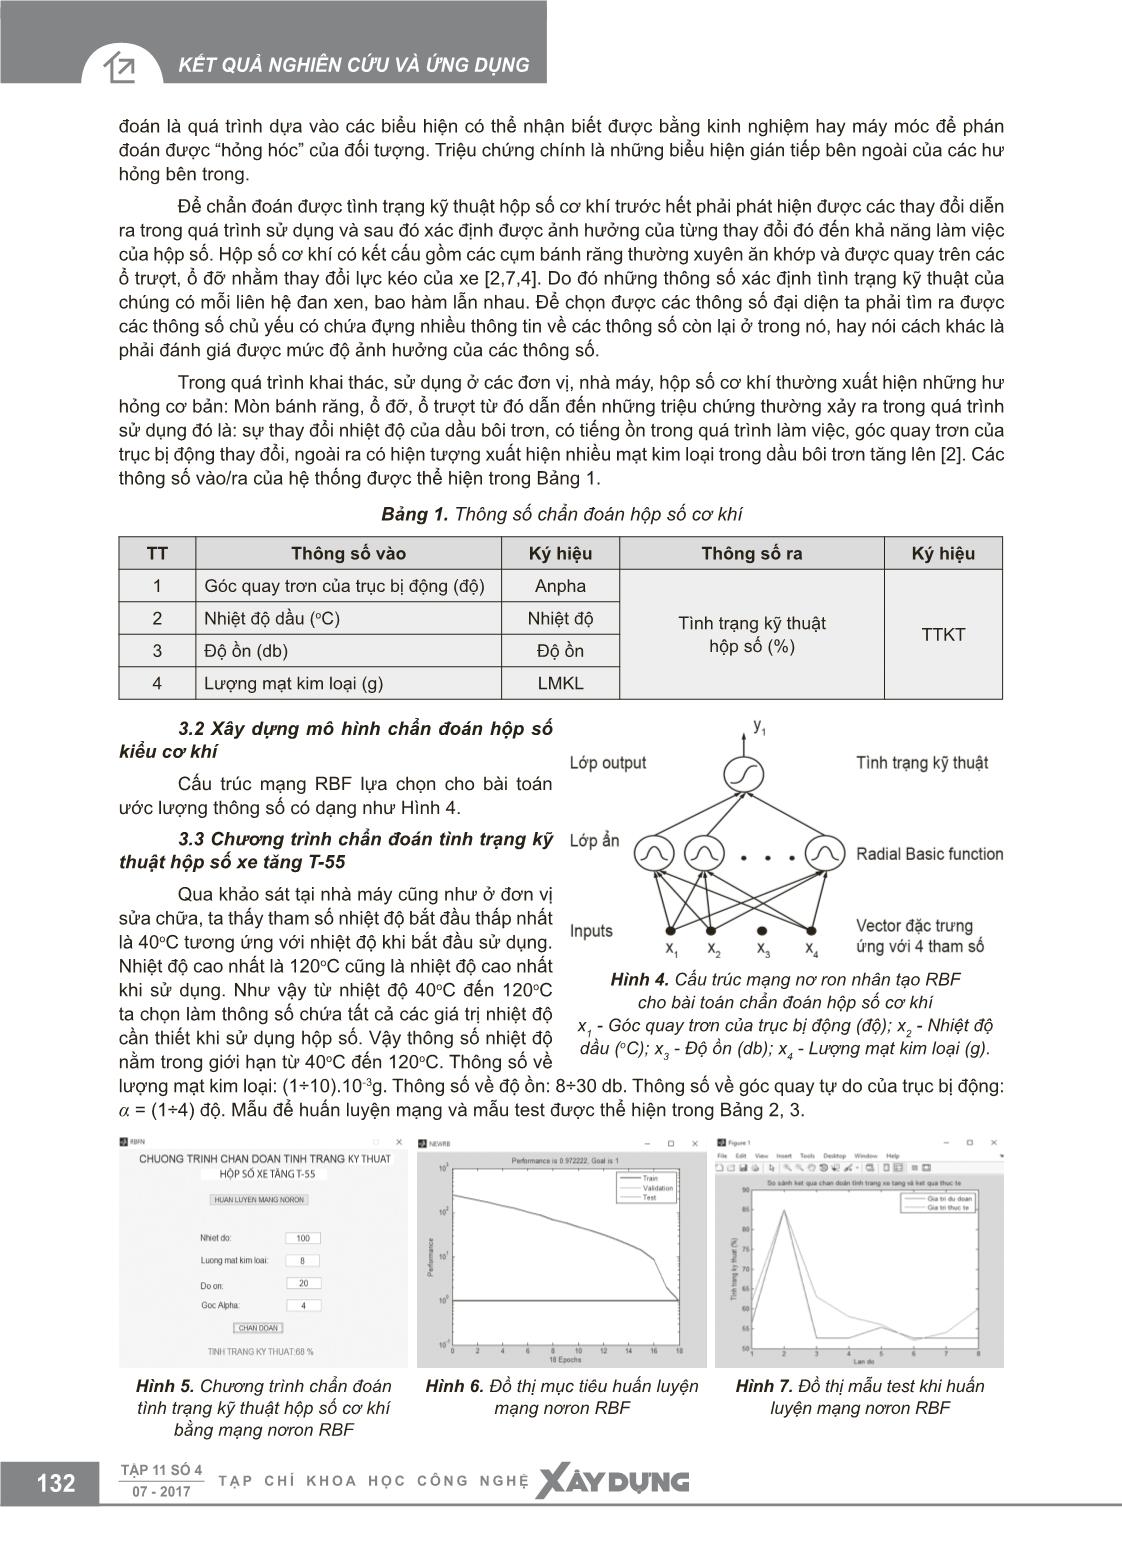 Chẩn đoán tình trạng kỹ thuật hộp số cơ khí trên cơ sở mạng nơron RBF trang 4